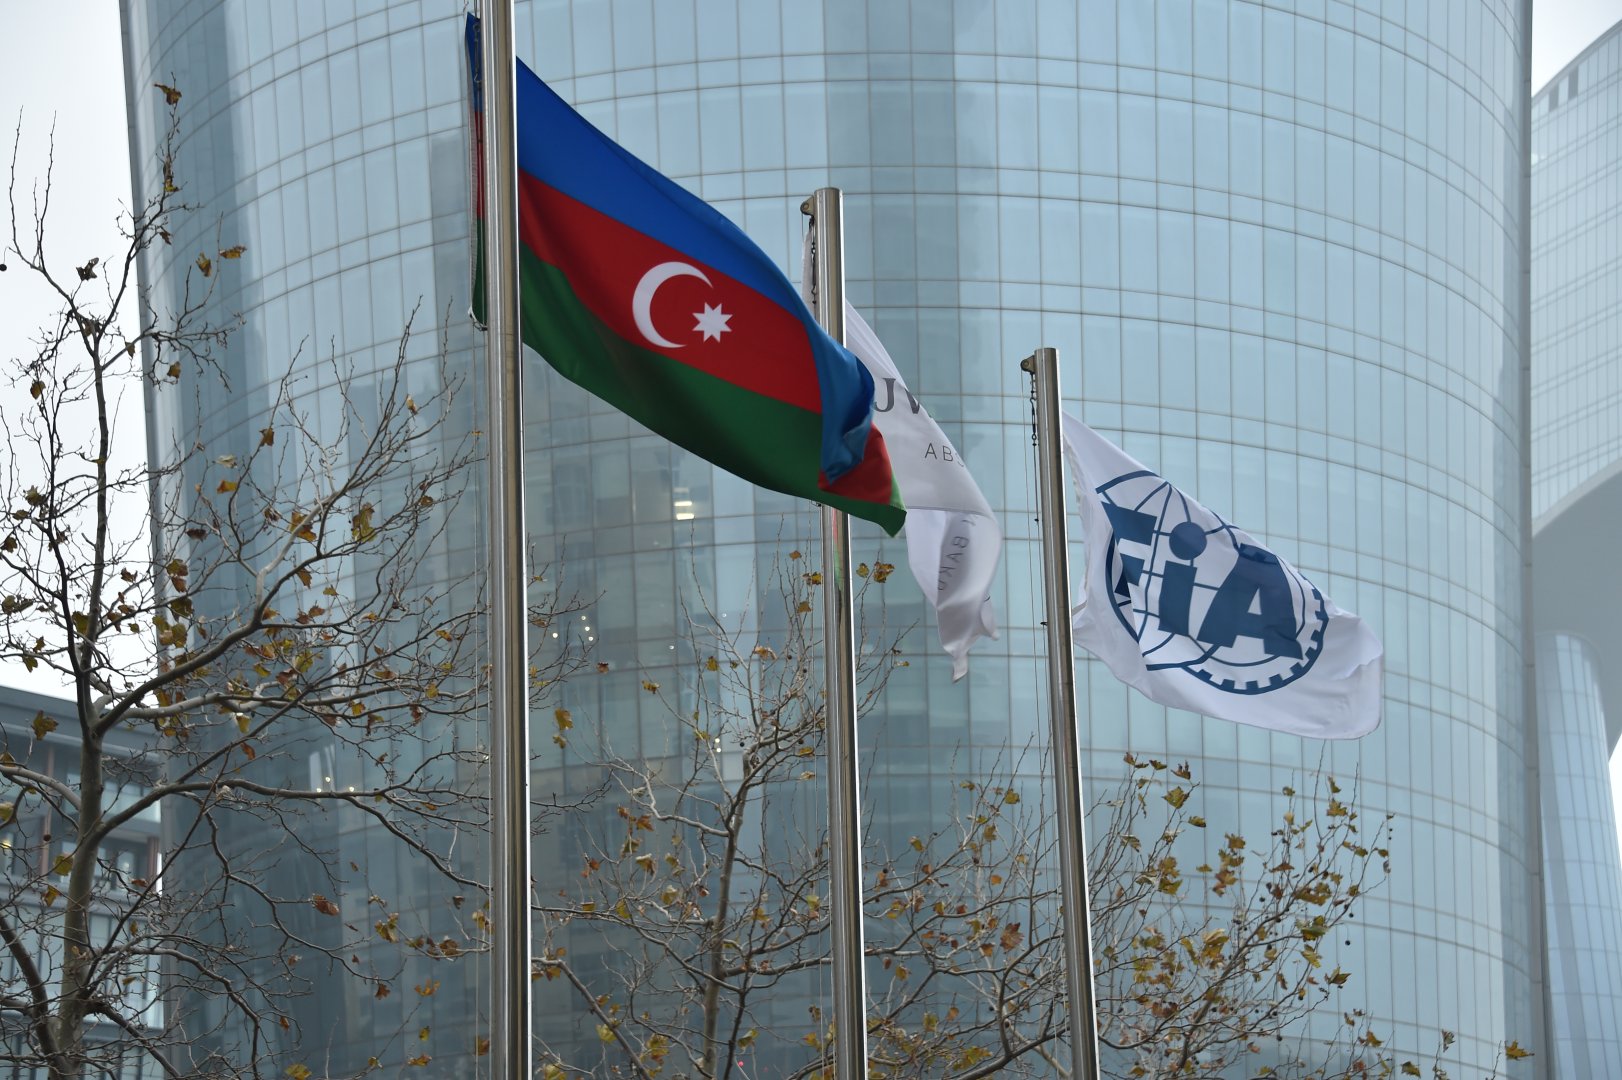 В Баку начались заседания Генеральной ассамблеи FIA (ФОТО)